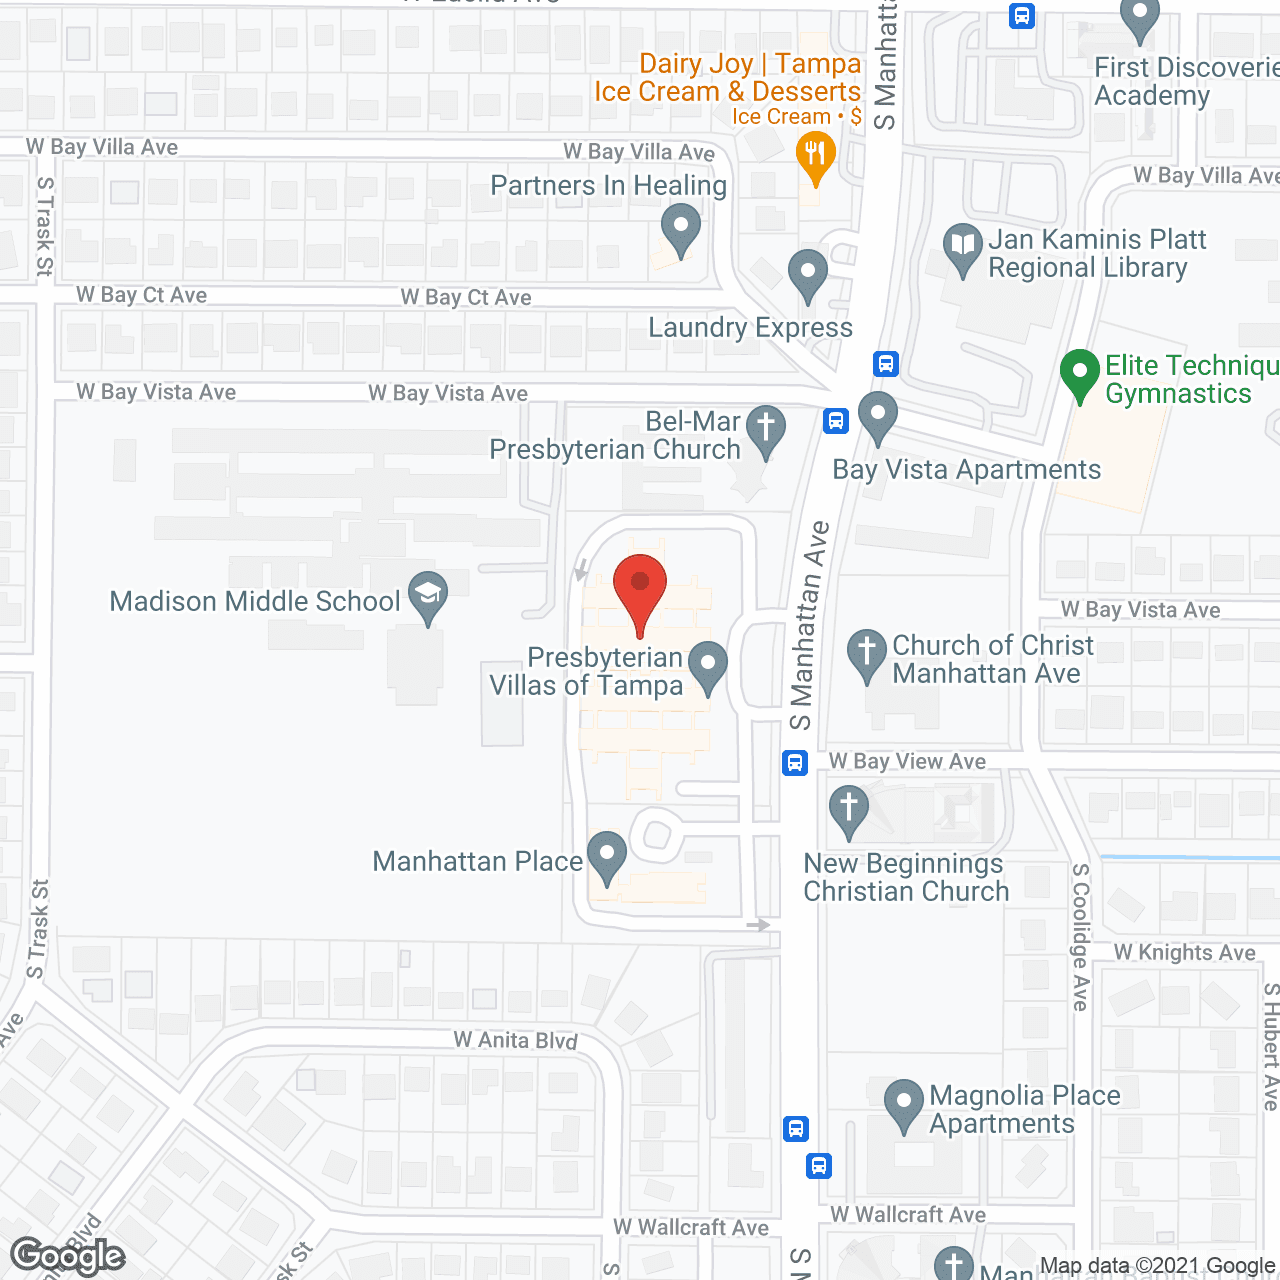 Presbyterian Villas of Tampa in google map